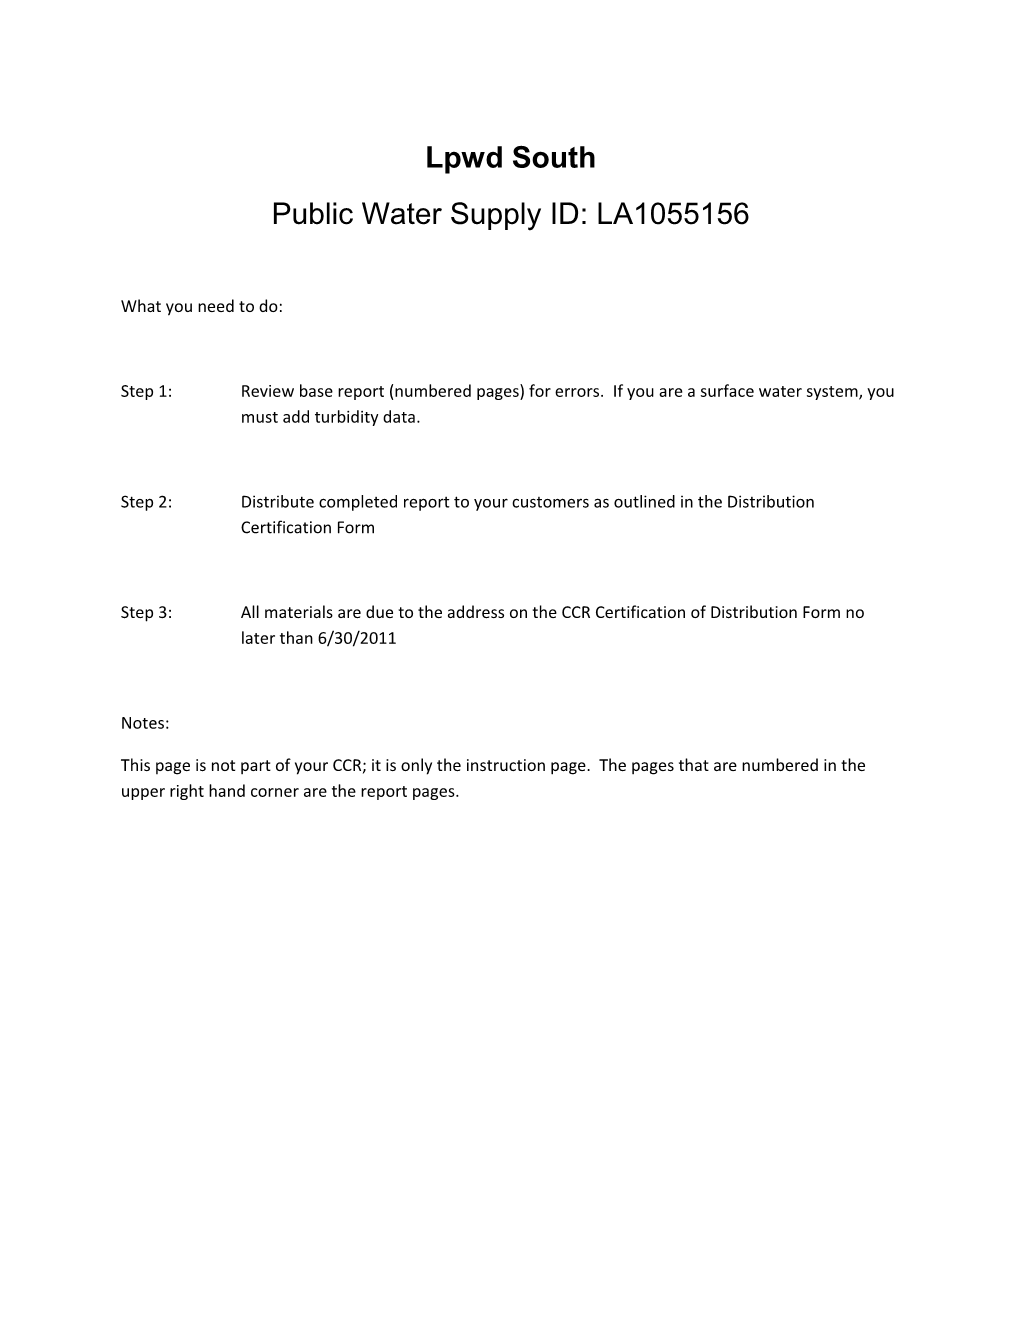 Public Water Supply ID: LA1055156